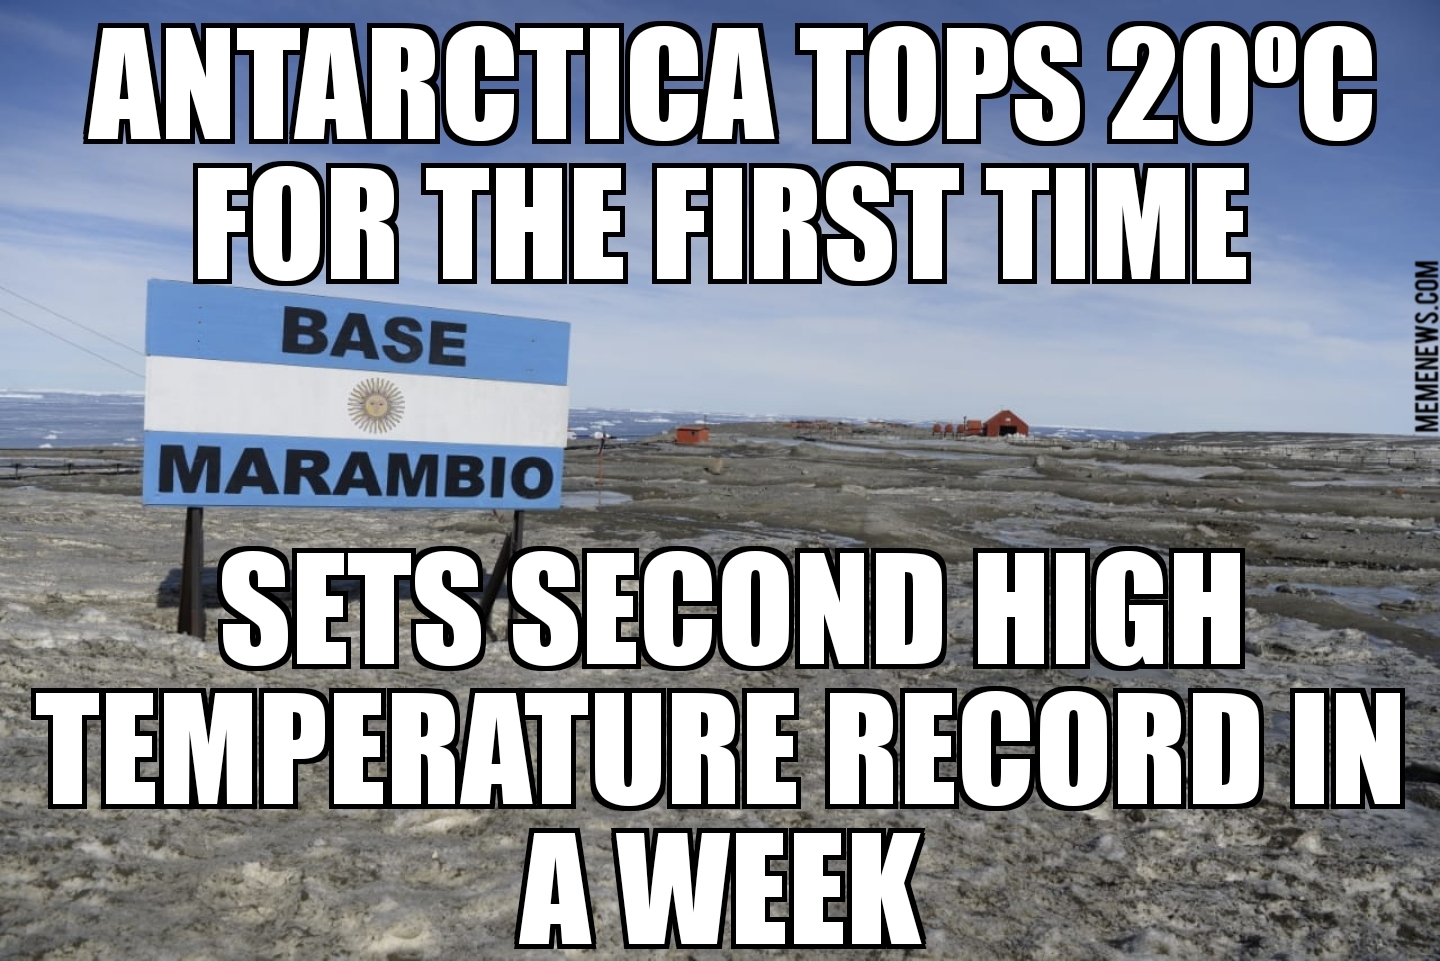 Antarctica tops 20ºC